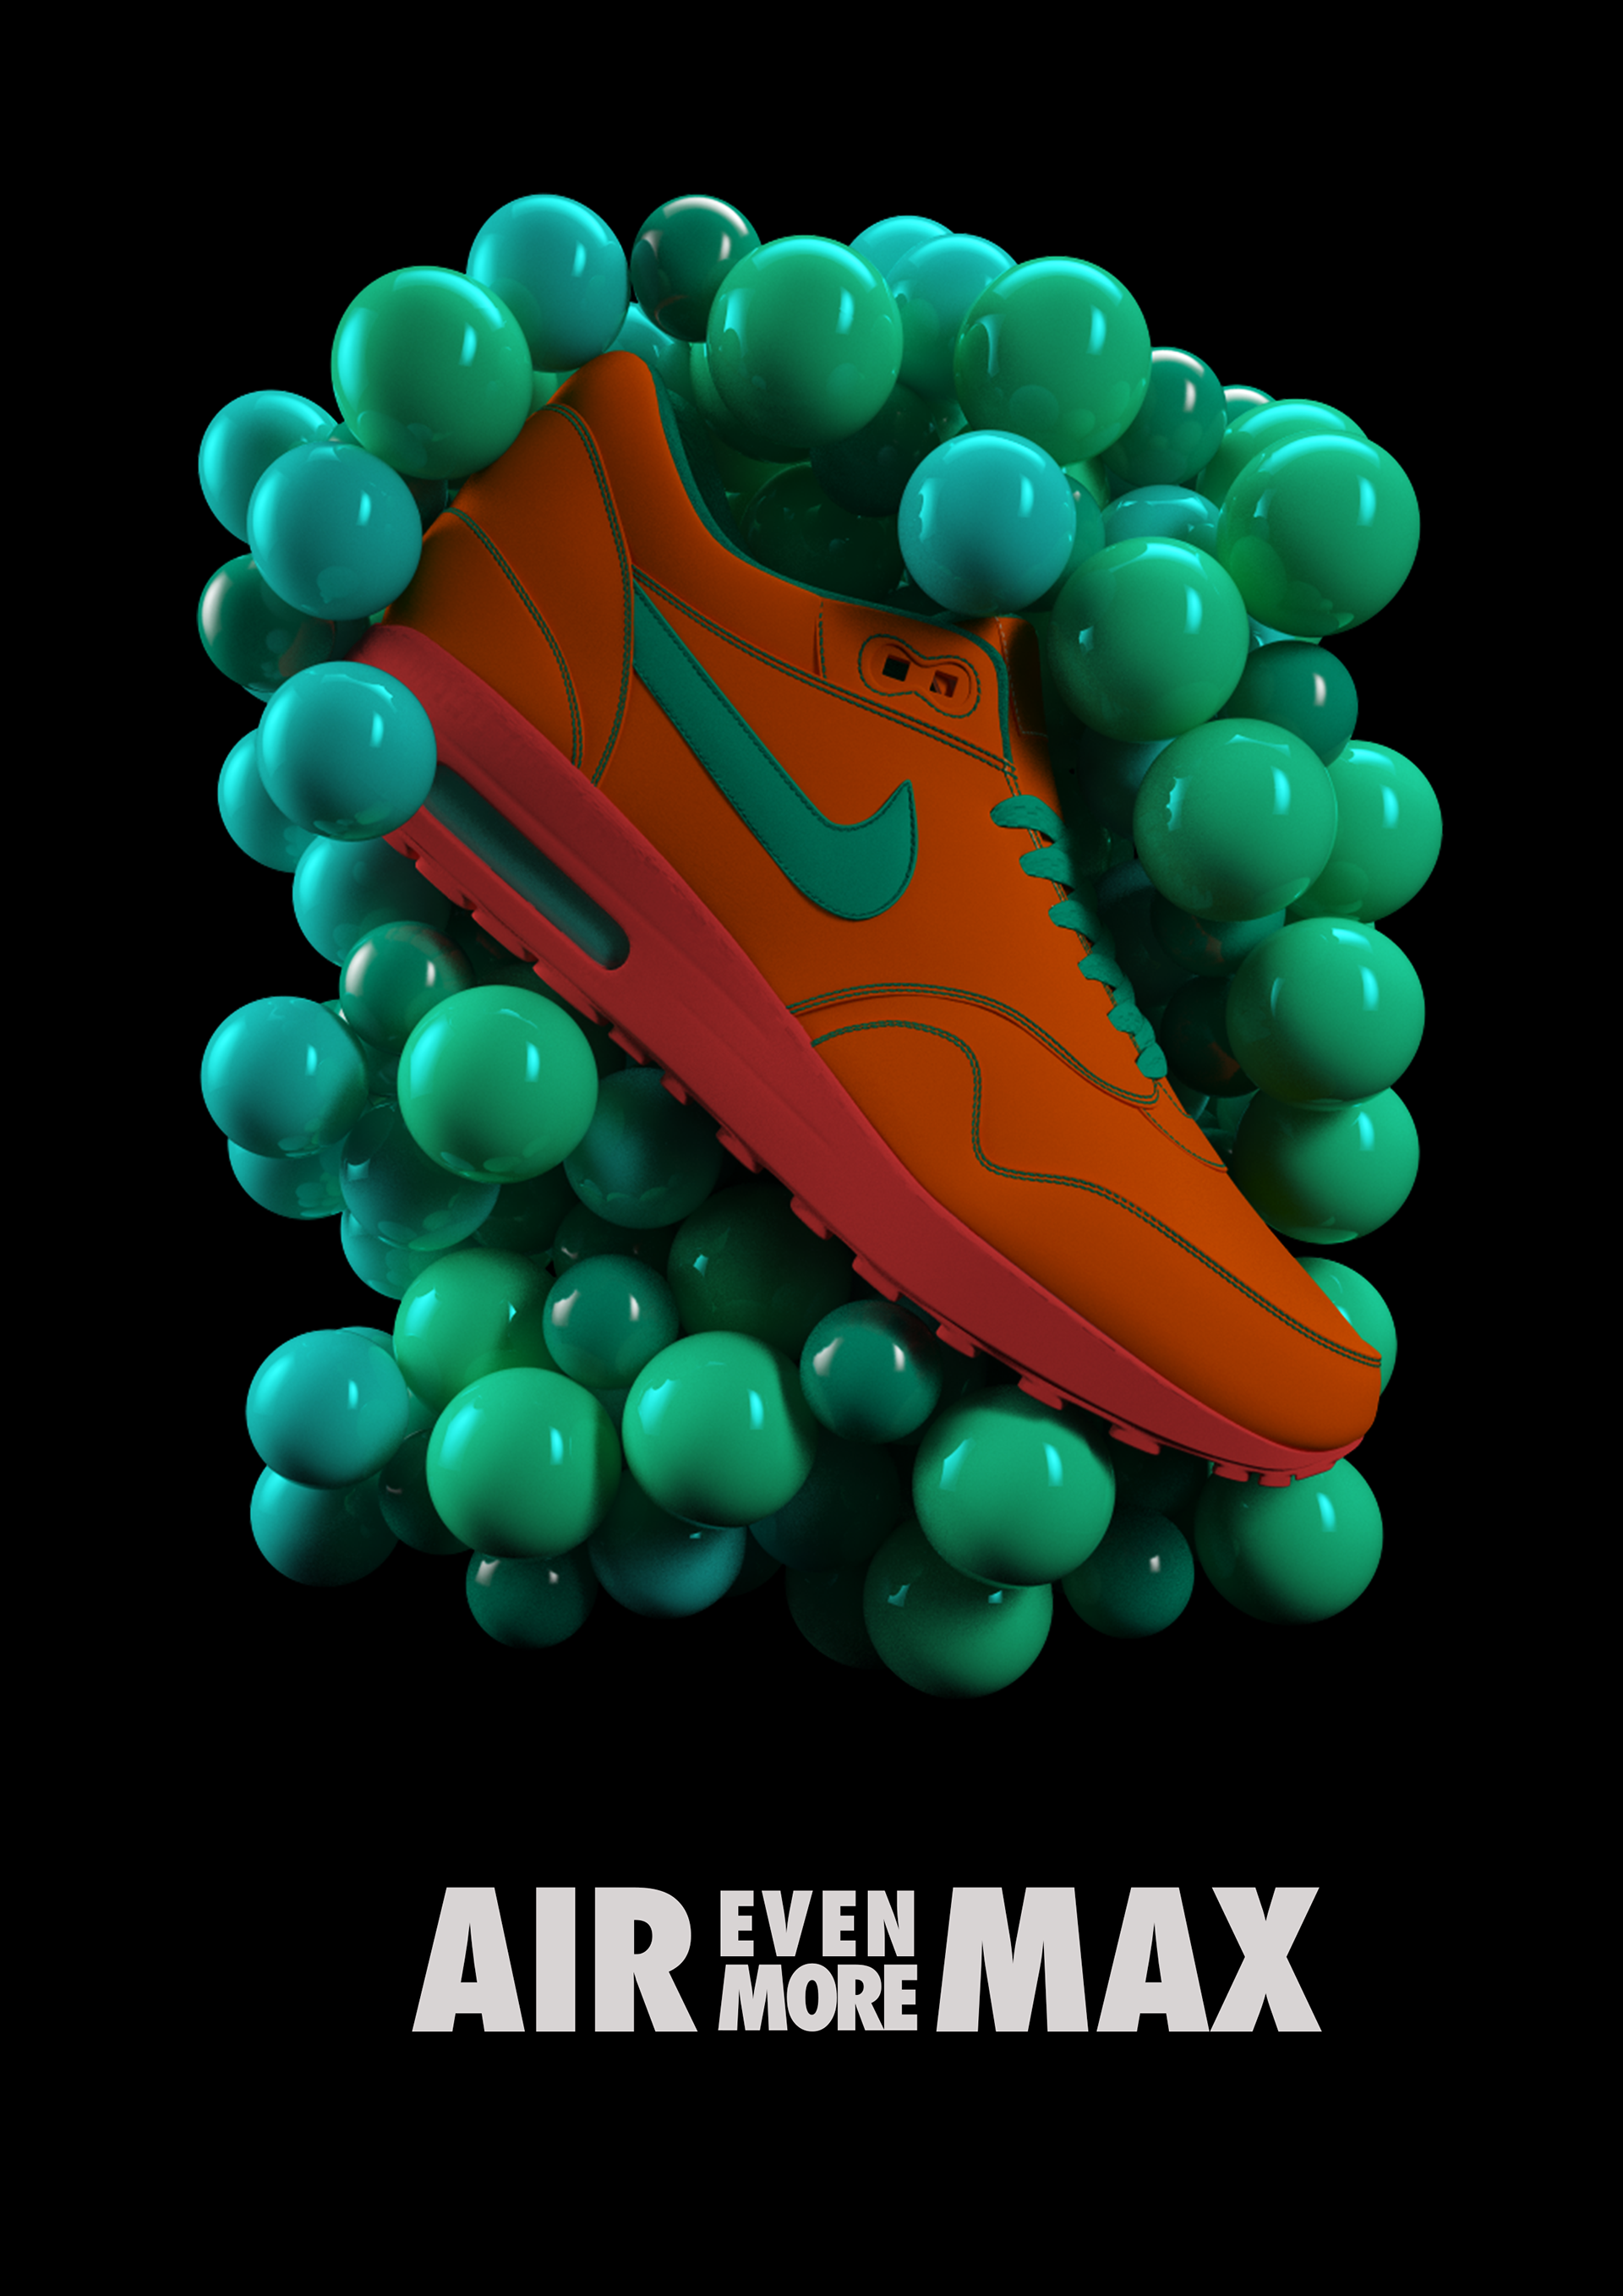 Nike Air Max on Behance